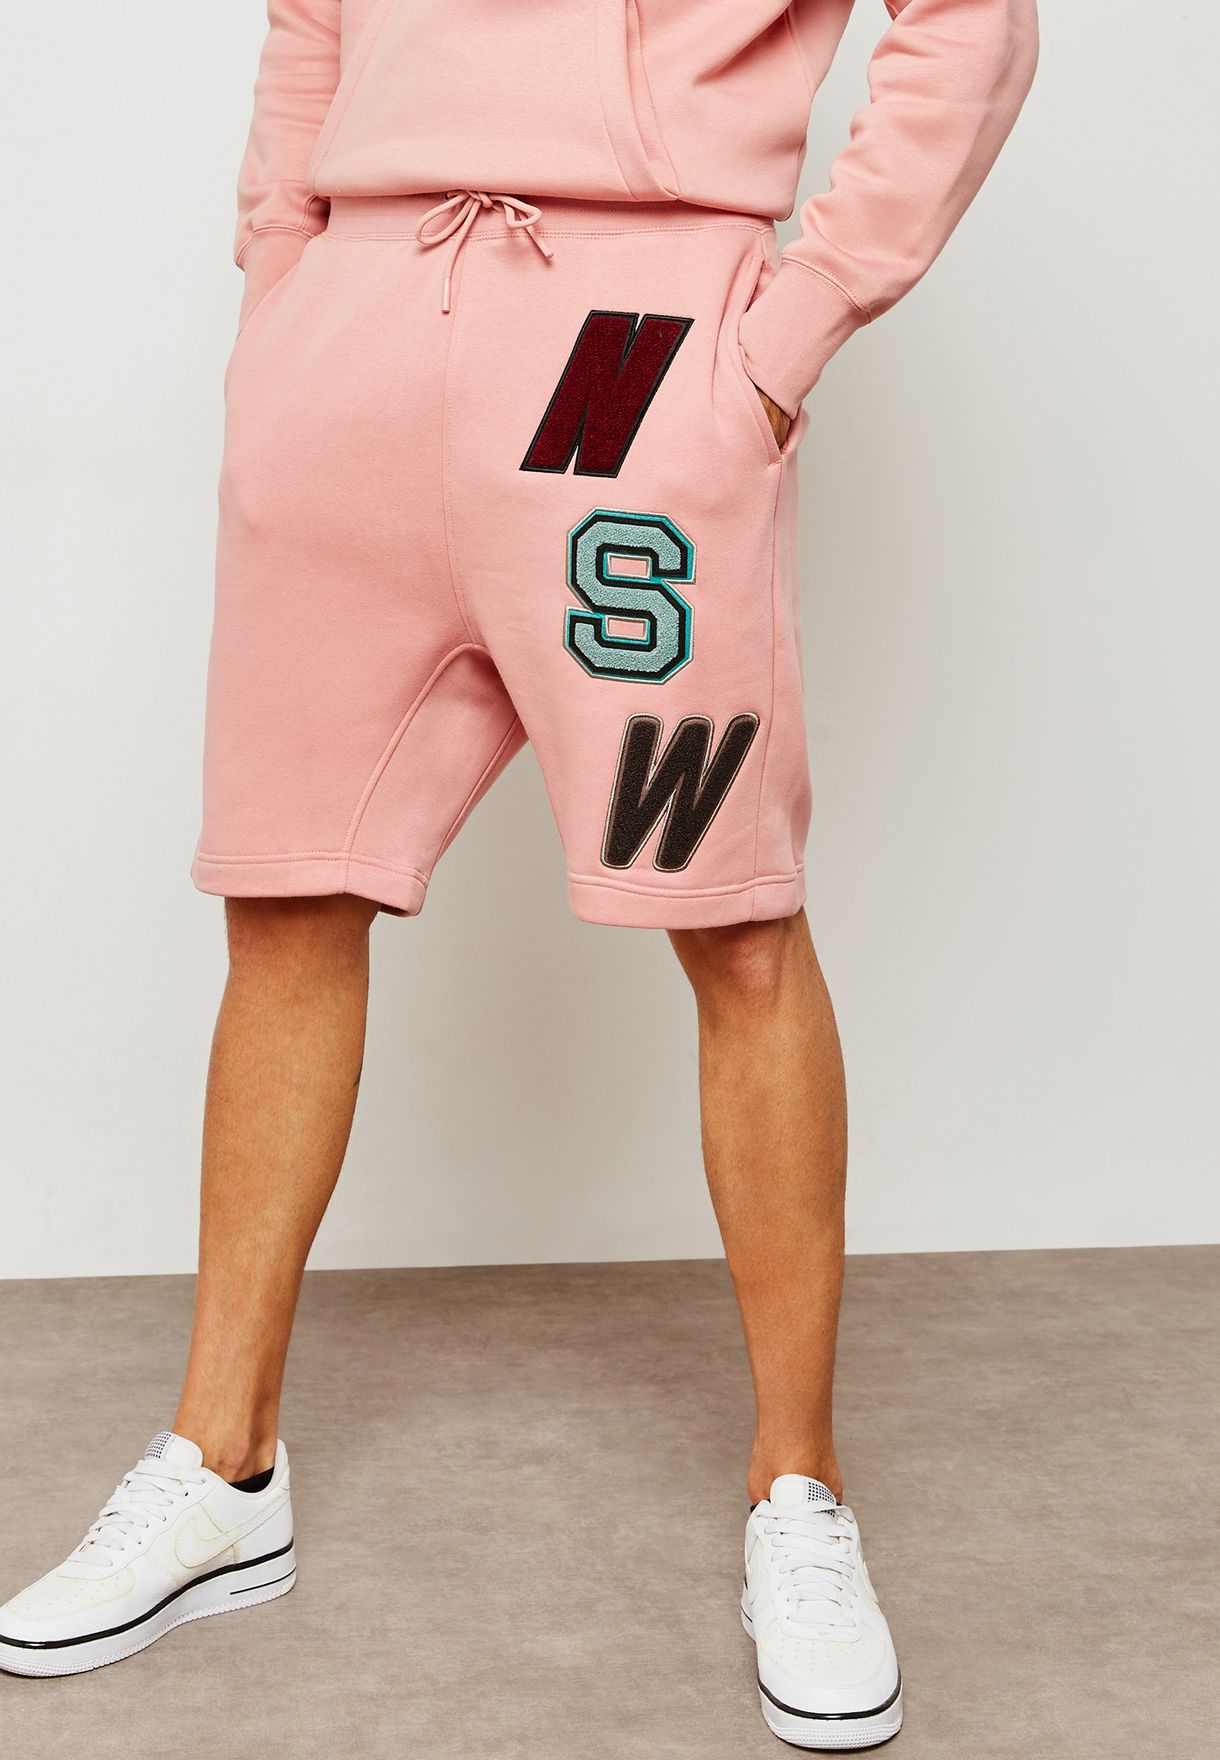 nike shorts pink mens